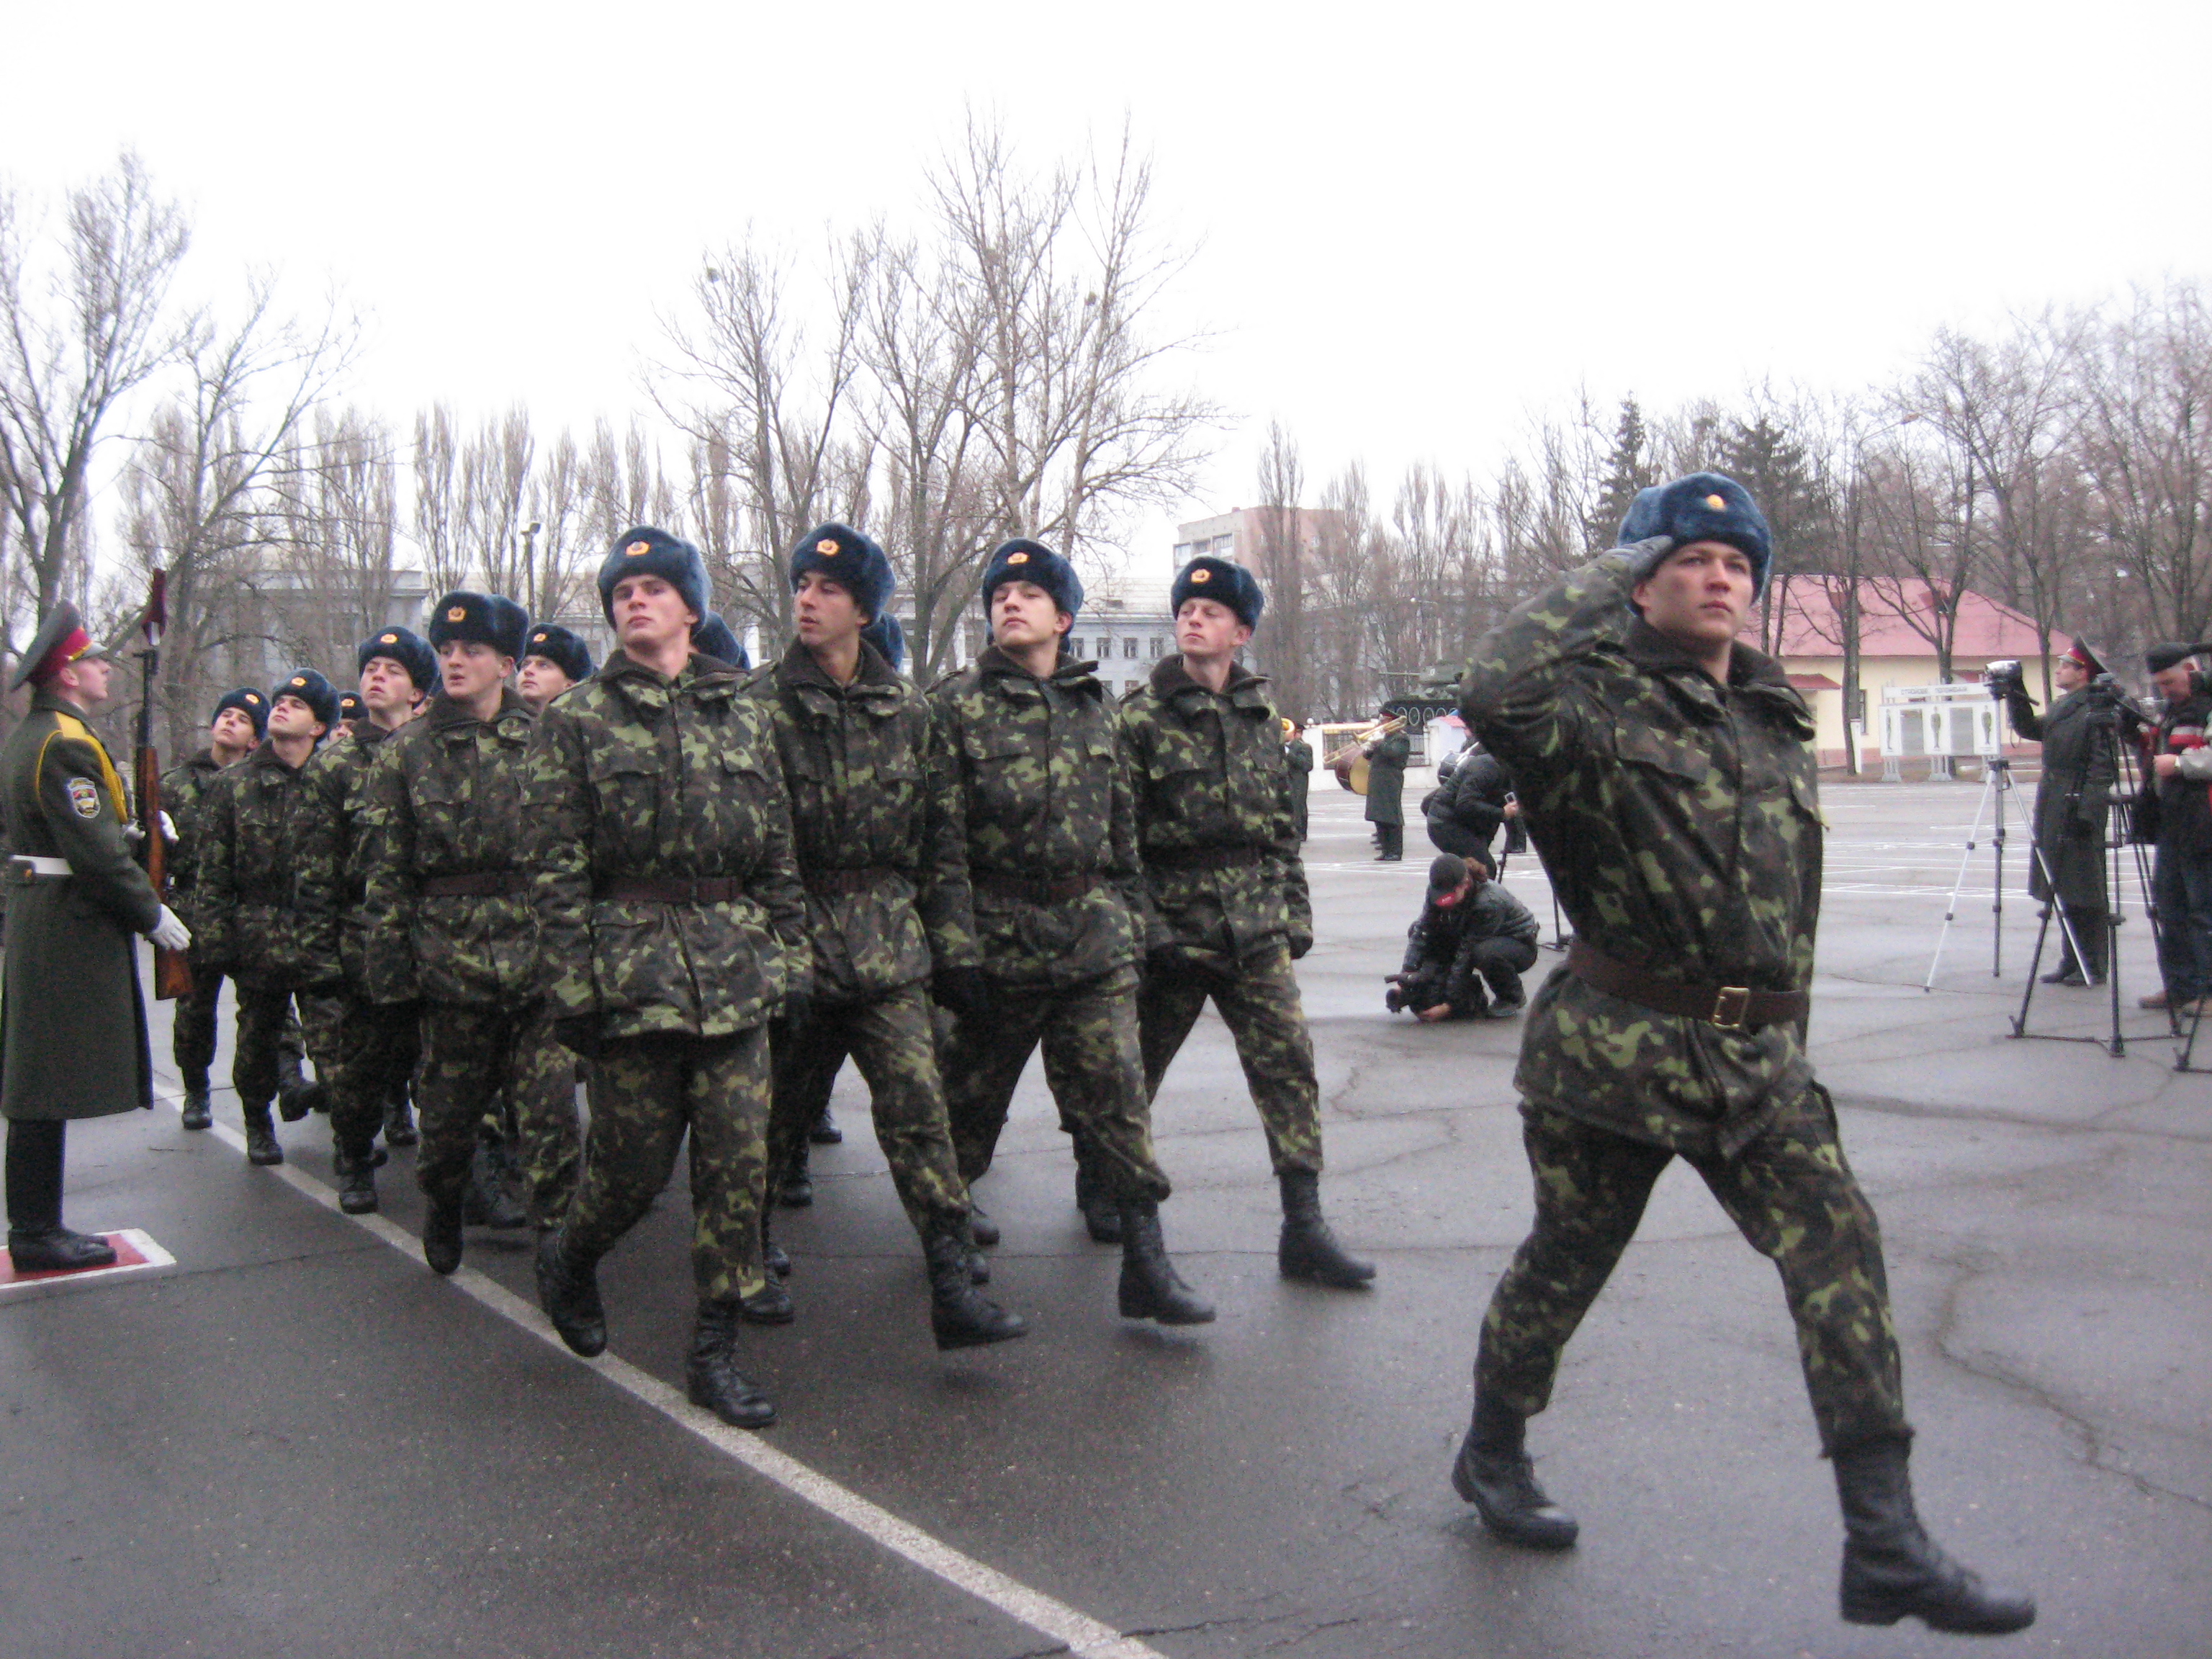 А вот в мае-августе наши военные проведут совместные учения с российскими коллегами "Фарватер мира-2011". Фото из архива "КП".